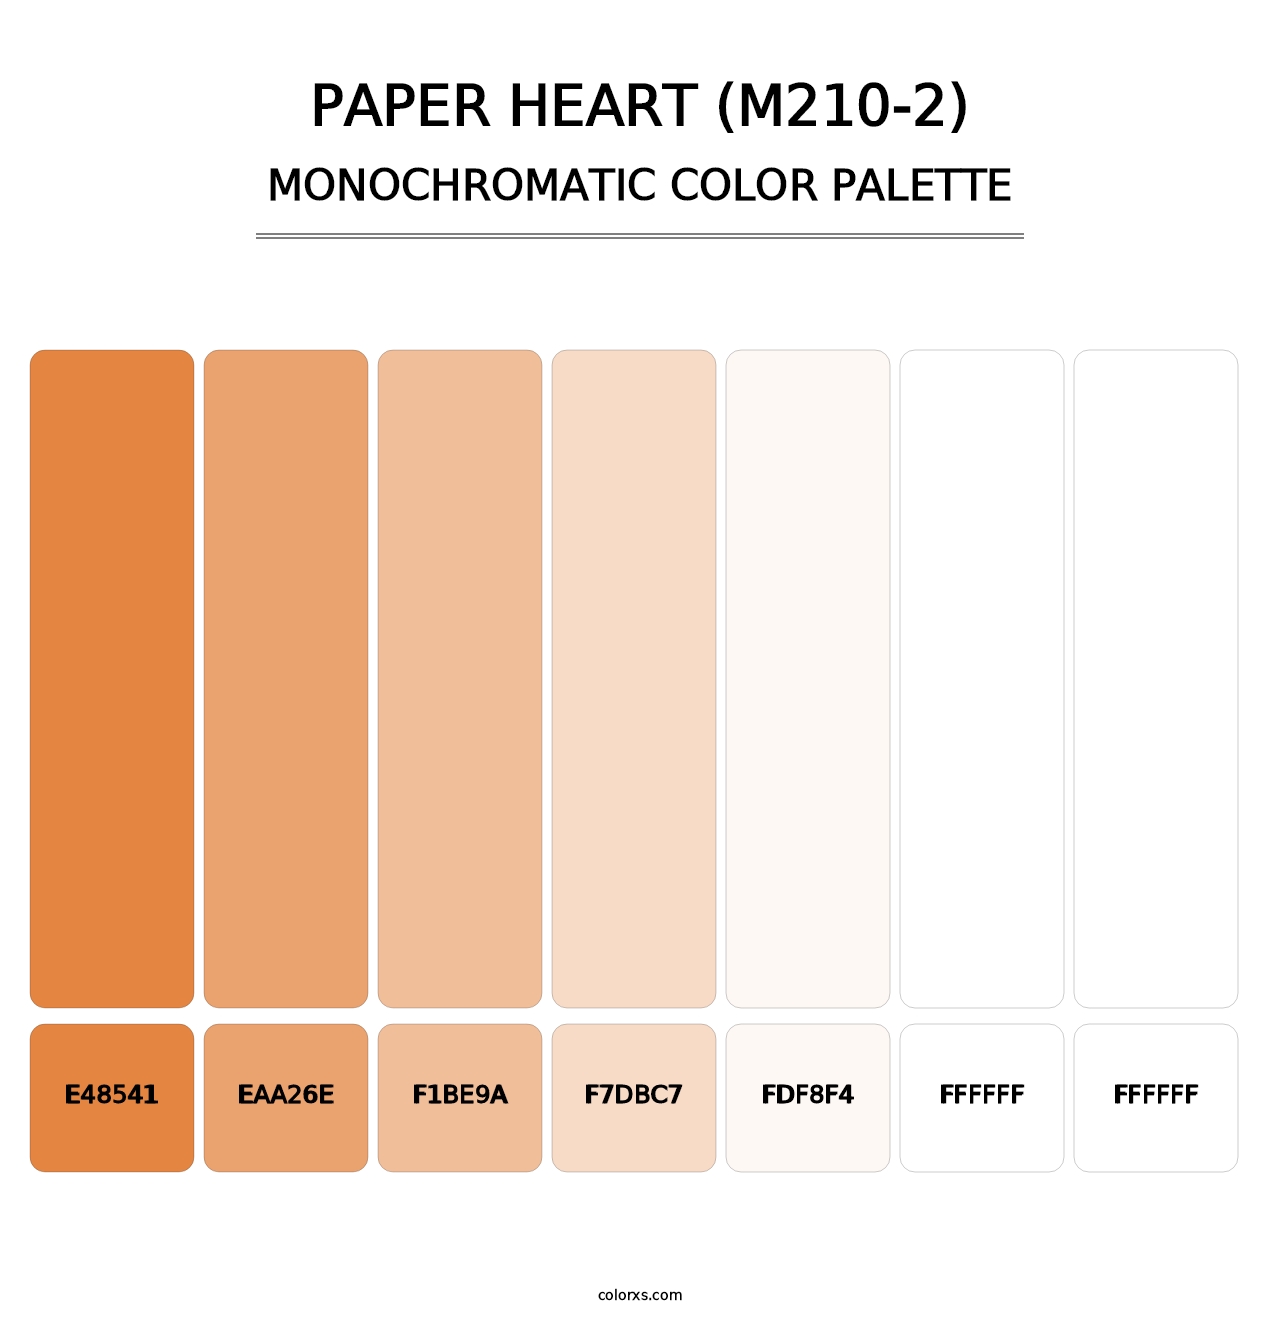 Paper Heart (M210-2) - Monochromatic Color Palette